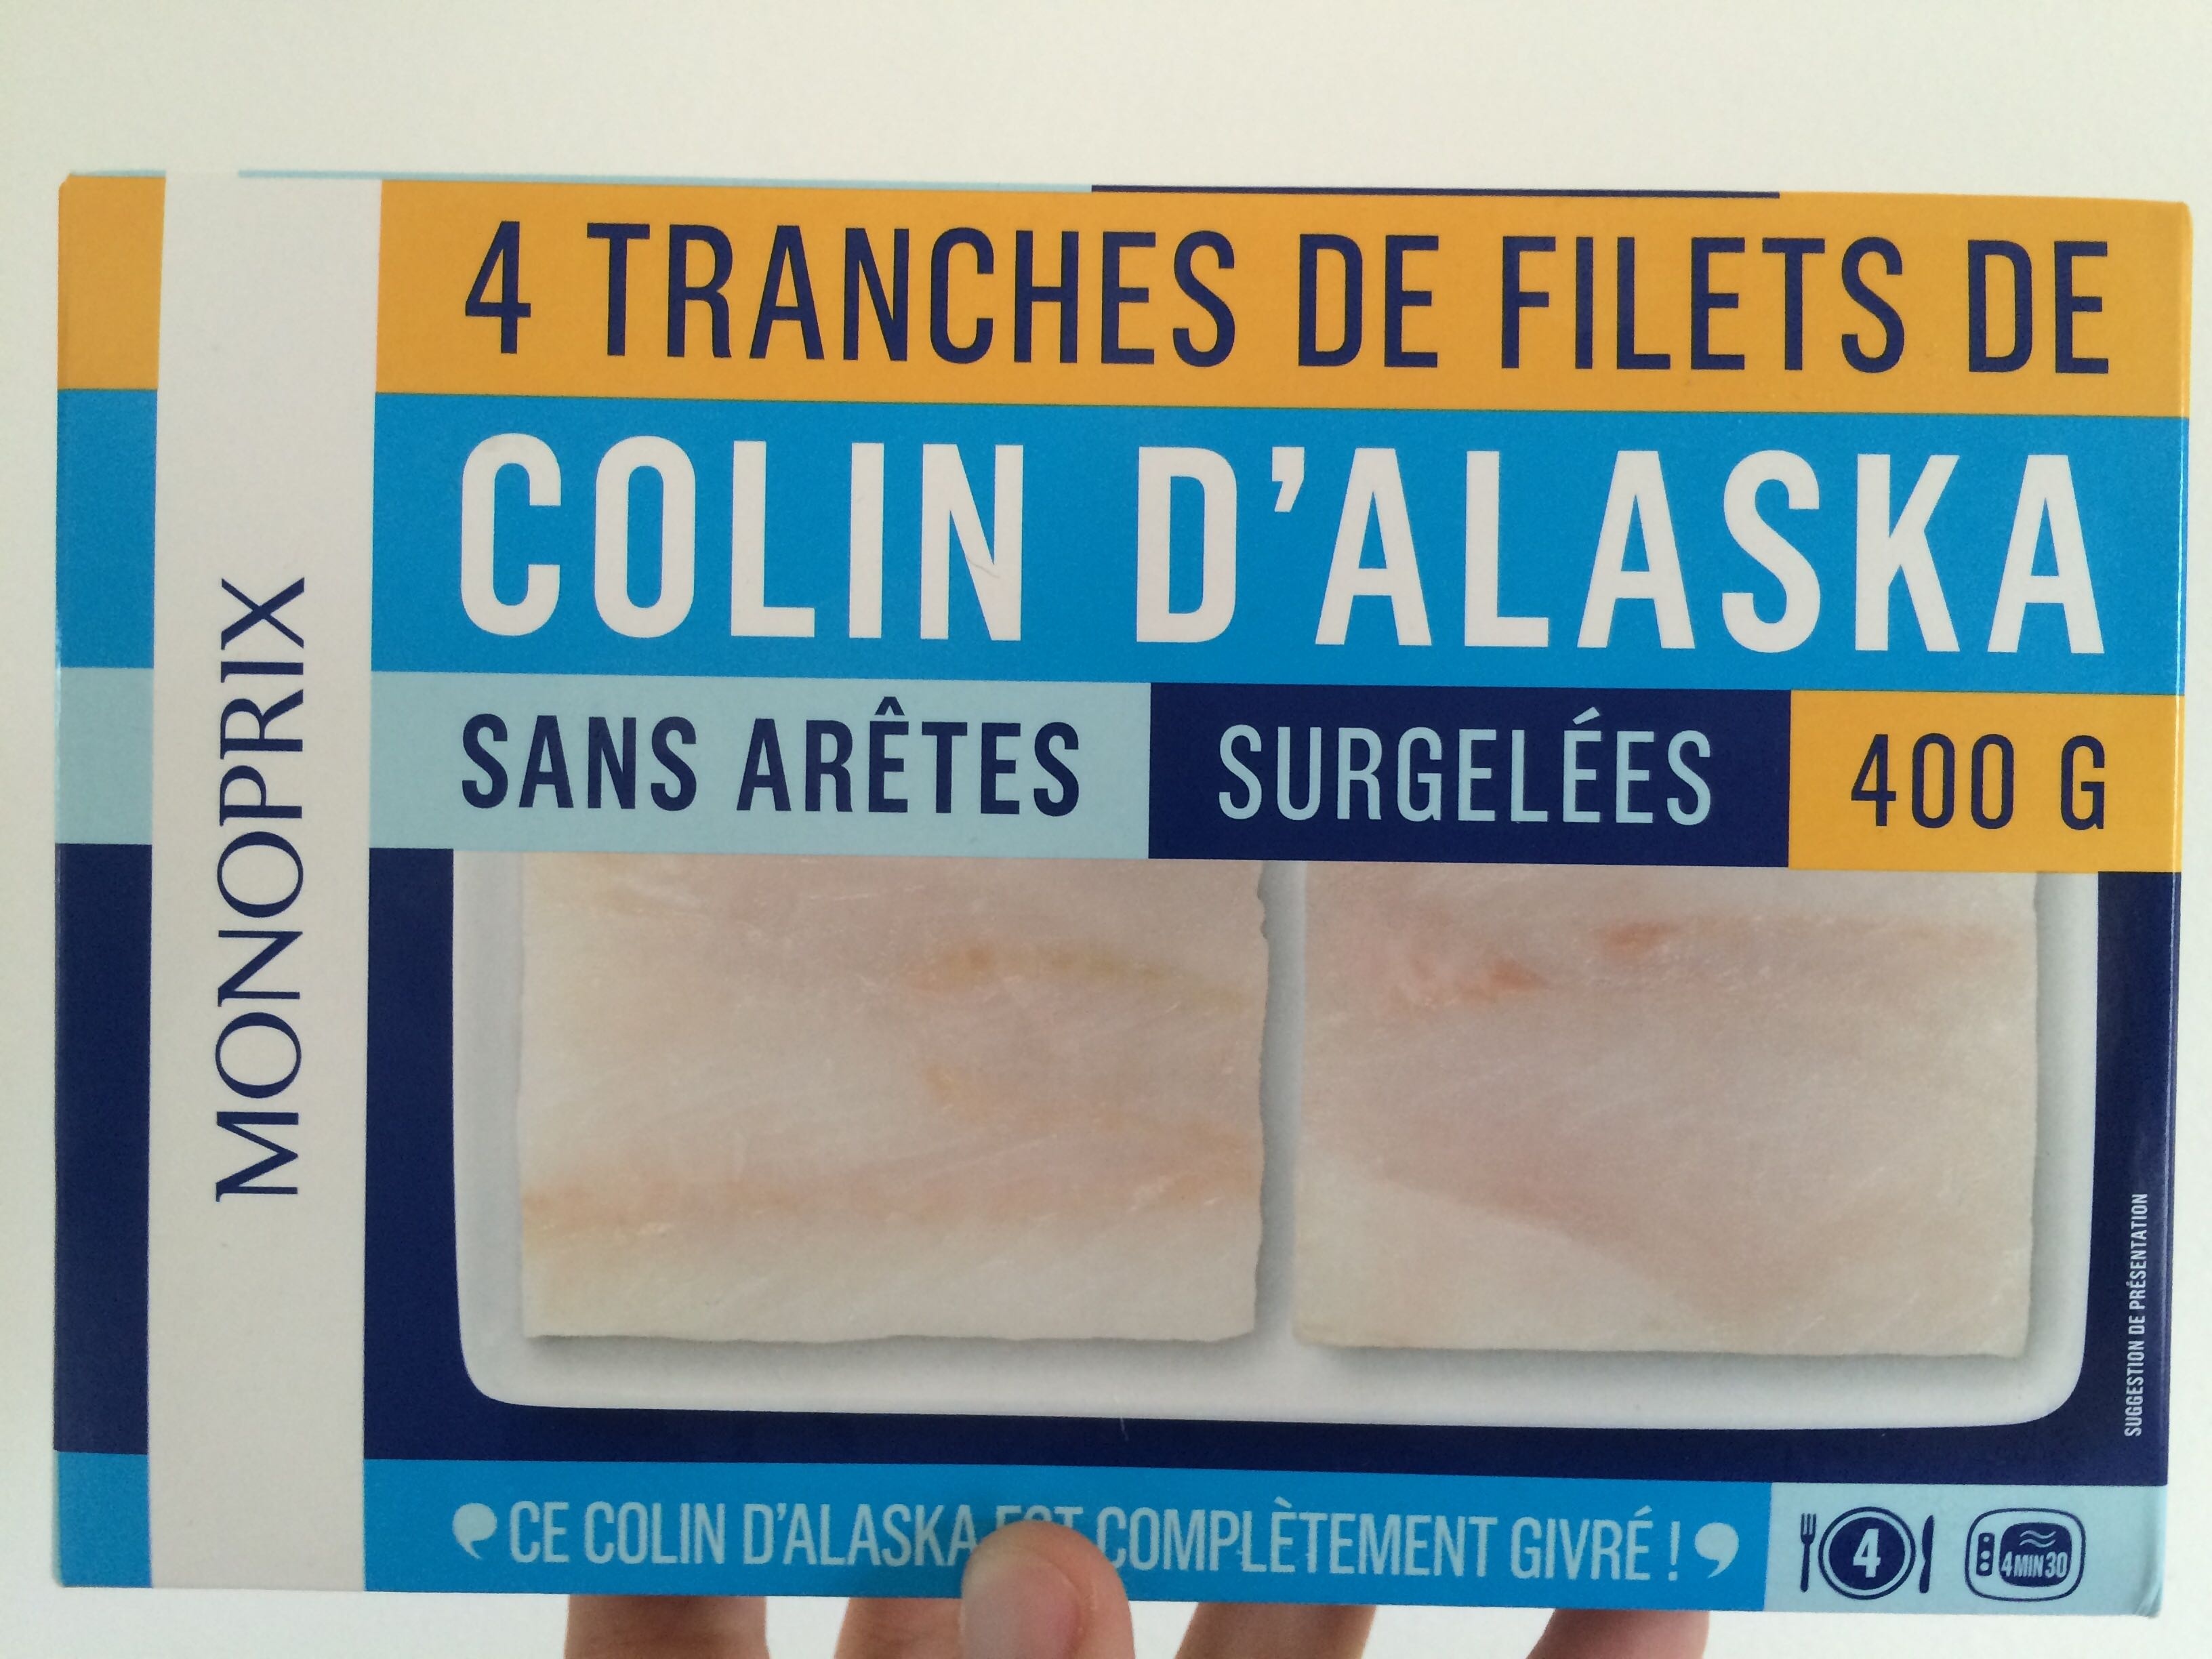 Colin d'Alaska sans arêtes surgelés - Product - fr